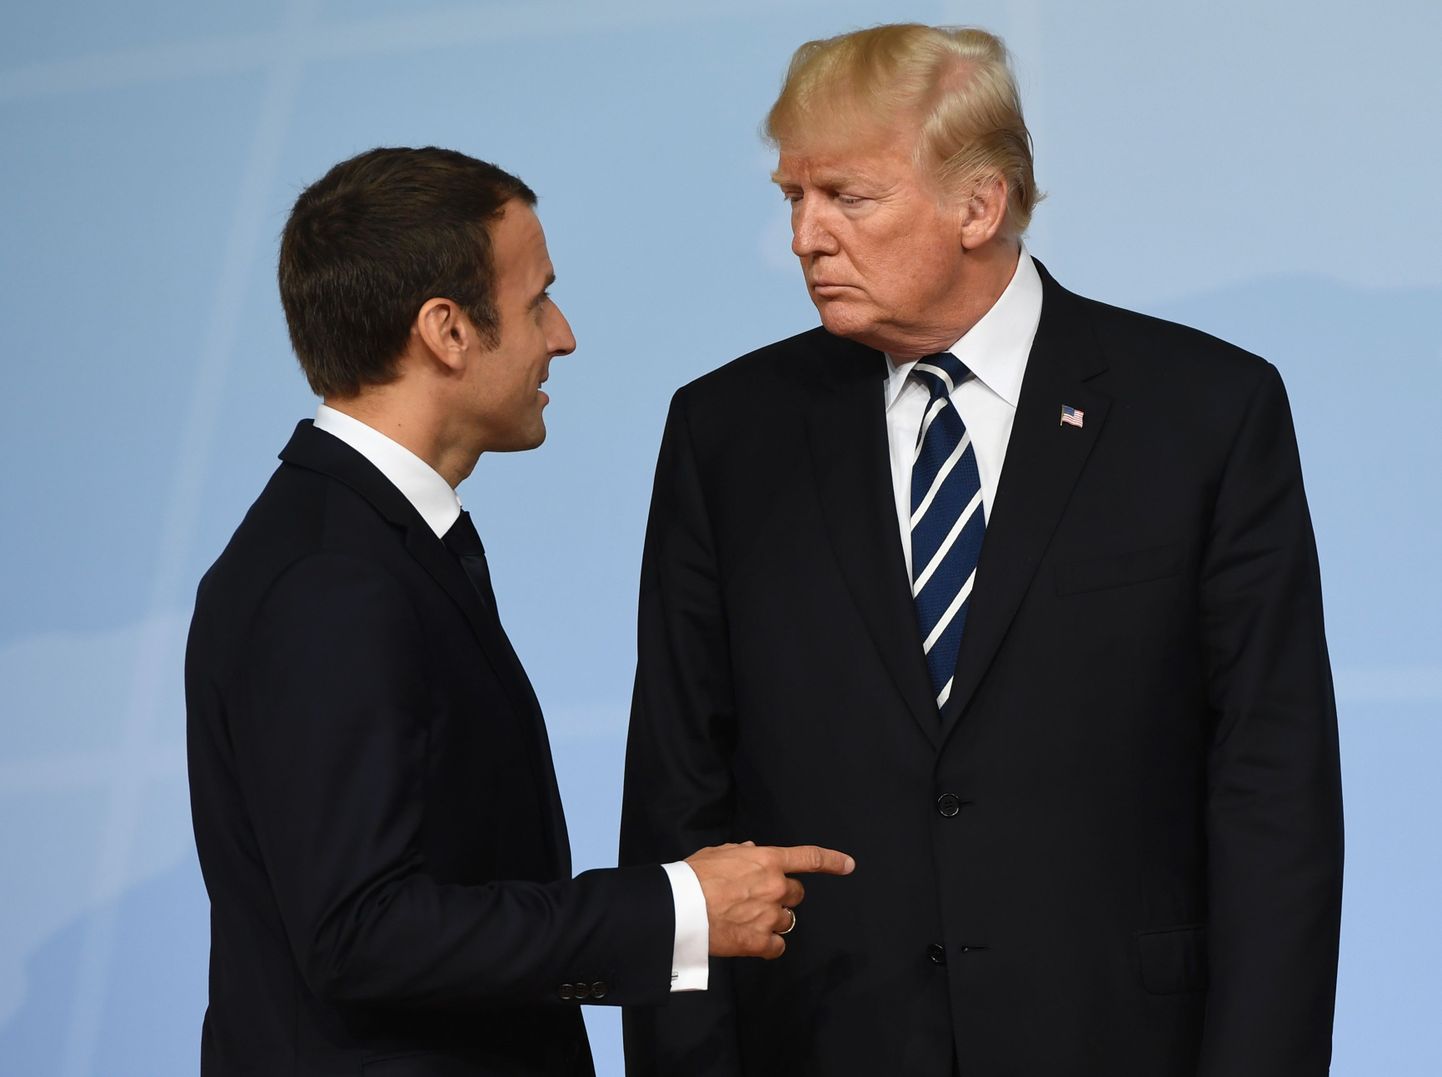 Prantsuse president Emmanuel Macron ja USA riigipea Donald Trump G20 tippkohtumisel 7. juulil Hamburgis.